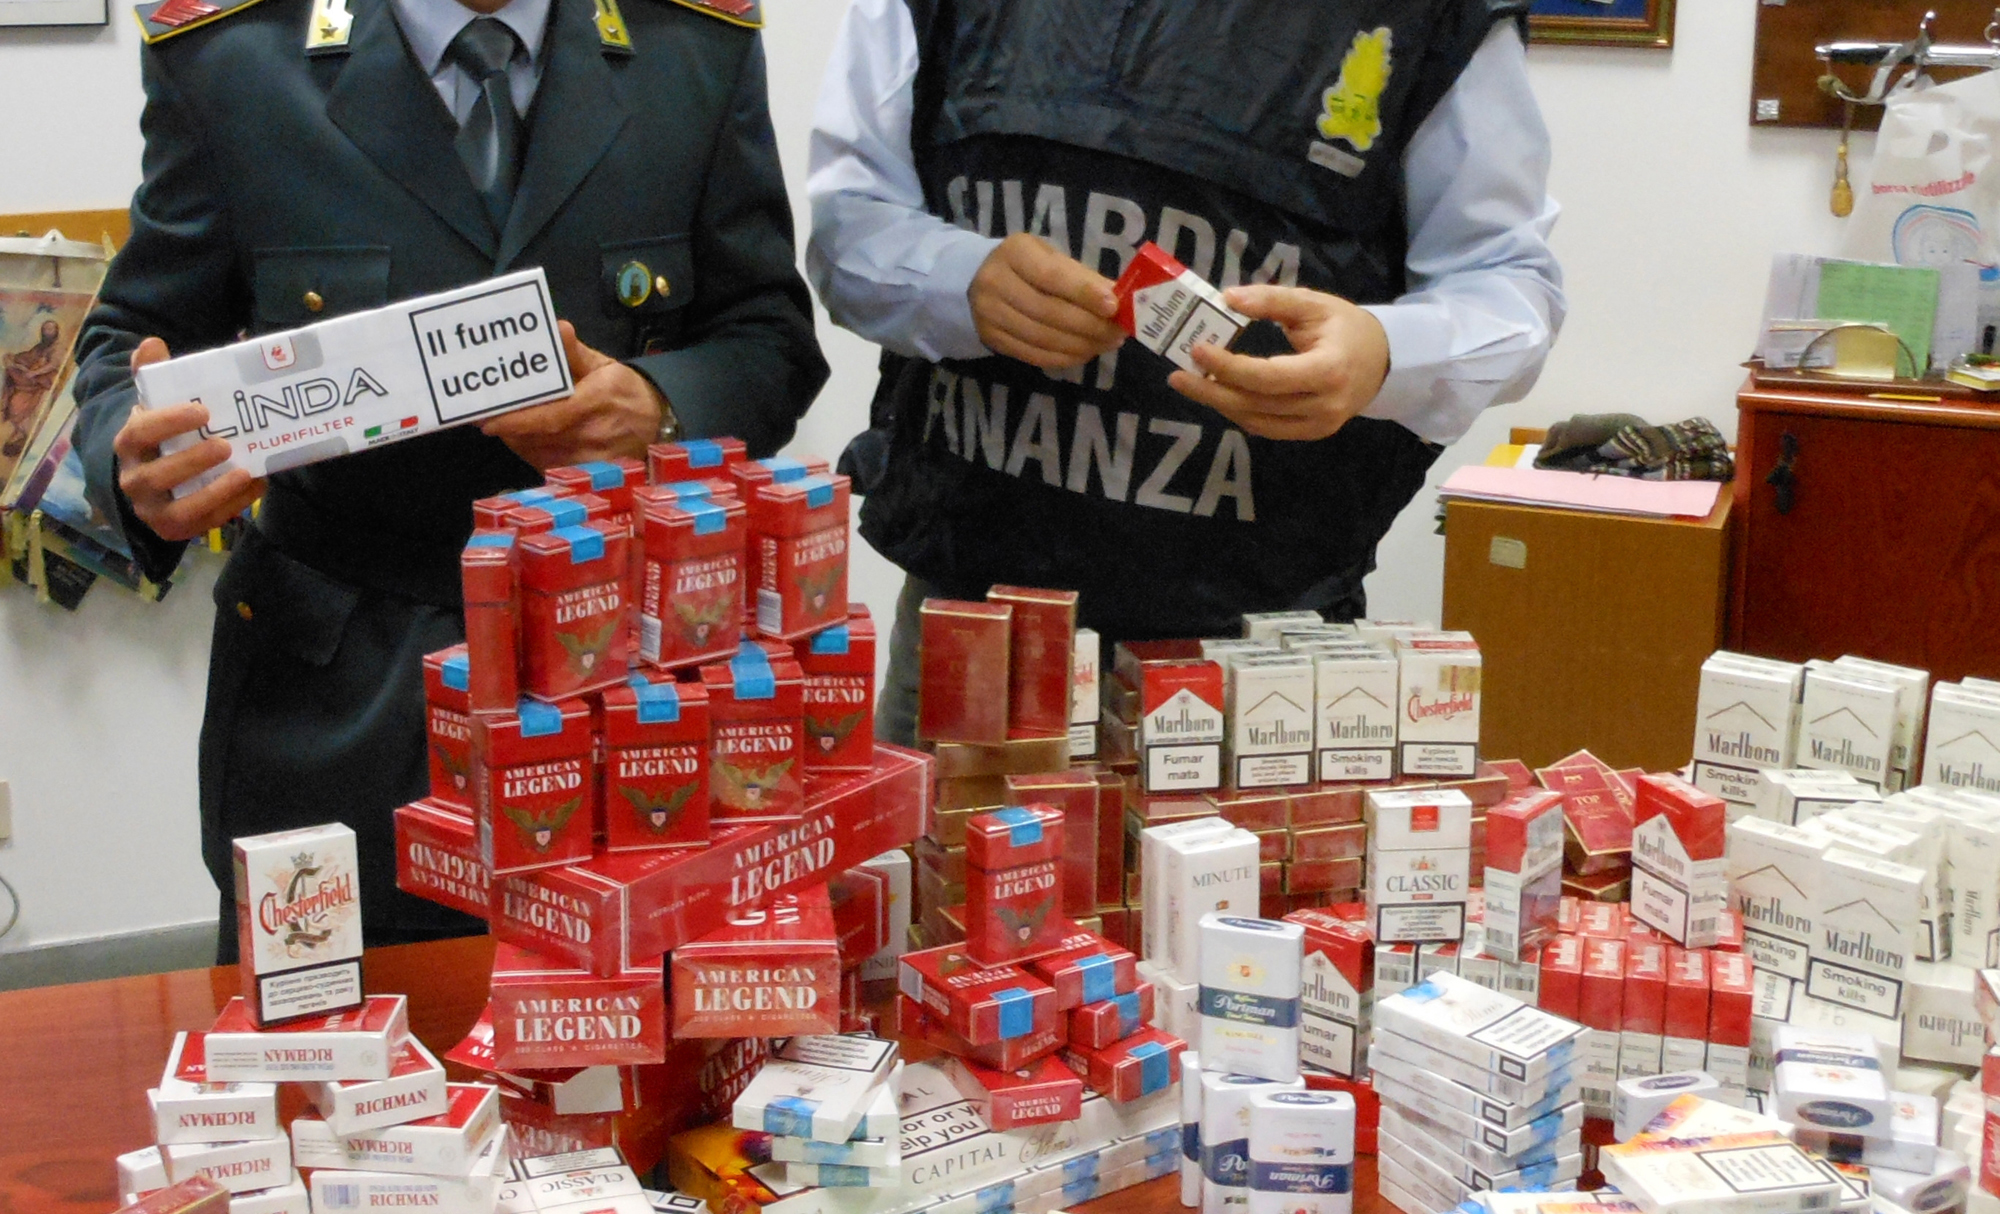 Risultati immagini per immagine di sigarette di contrabbando a napoli